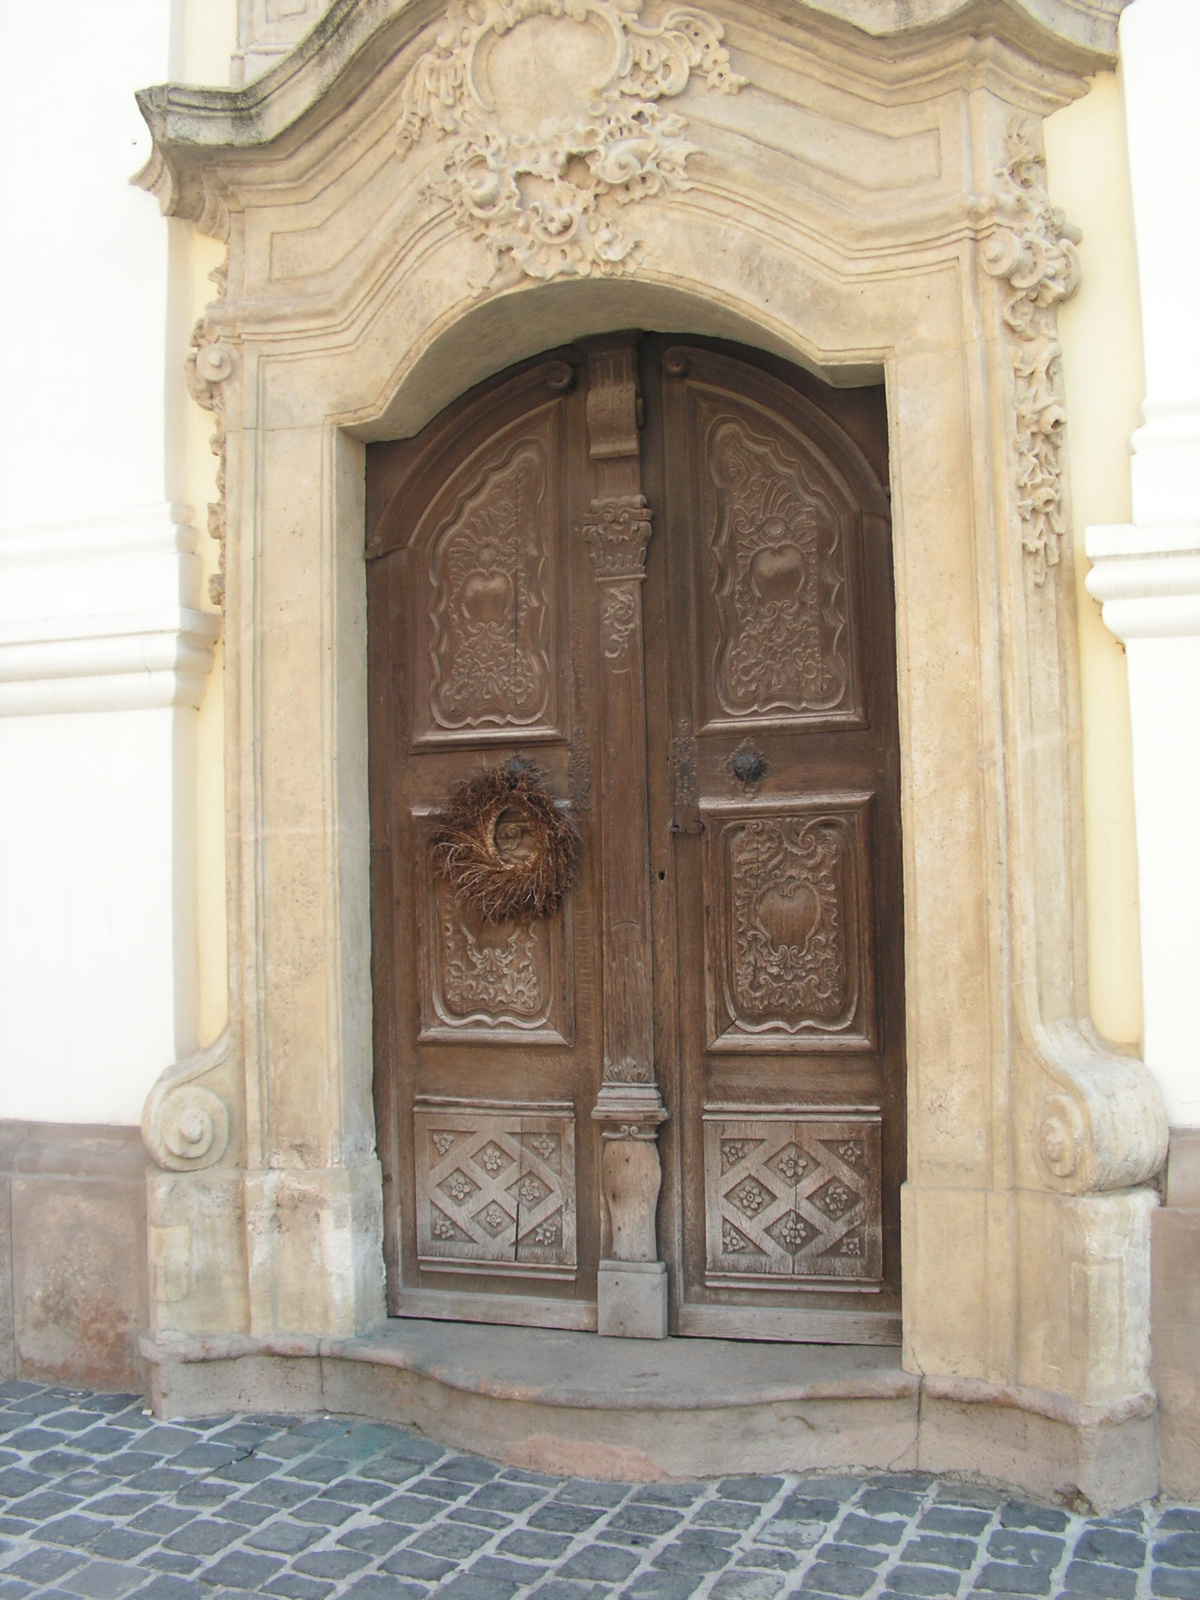 Szentendre, Blagovesztenszka Szerb Ortodox templom, SzG3